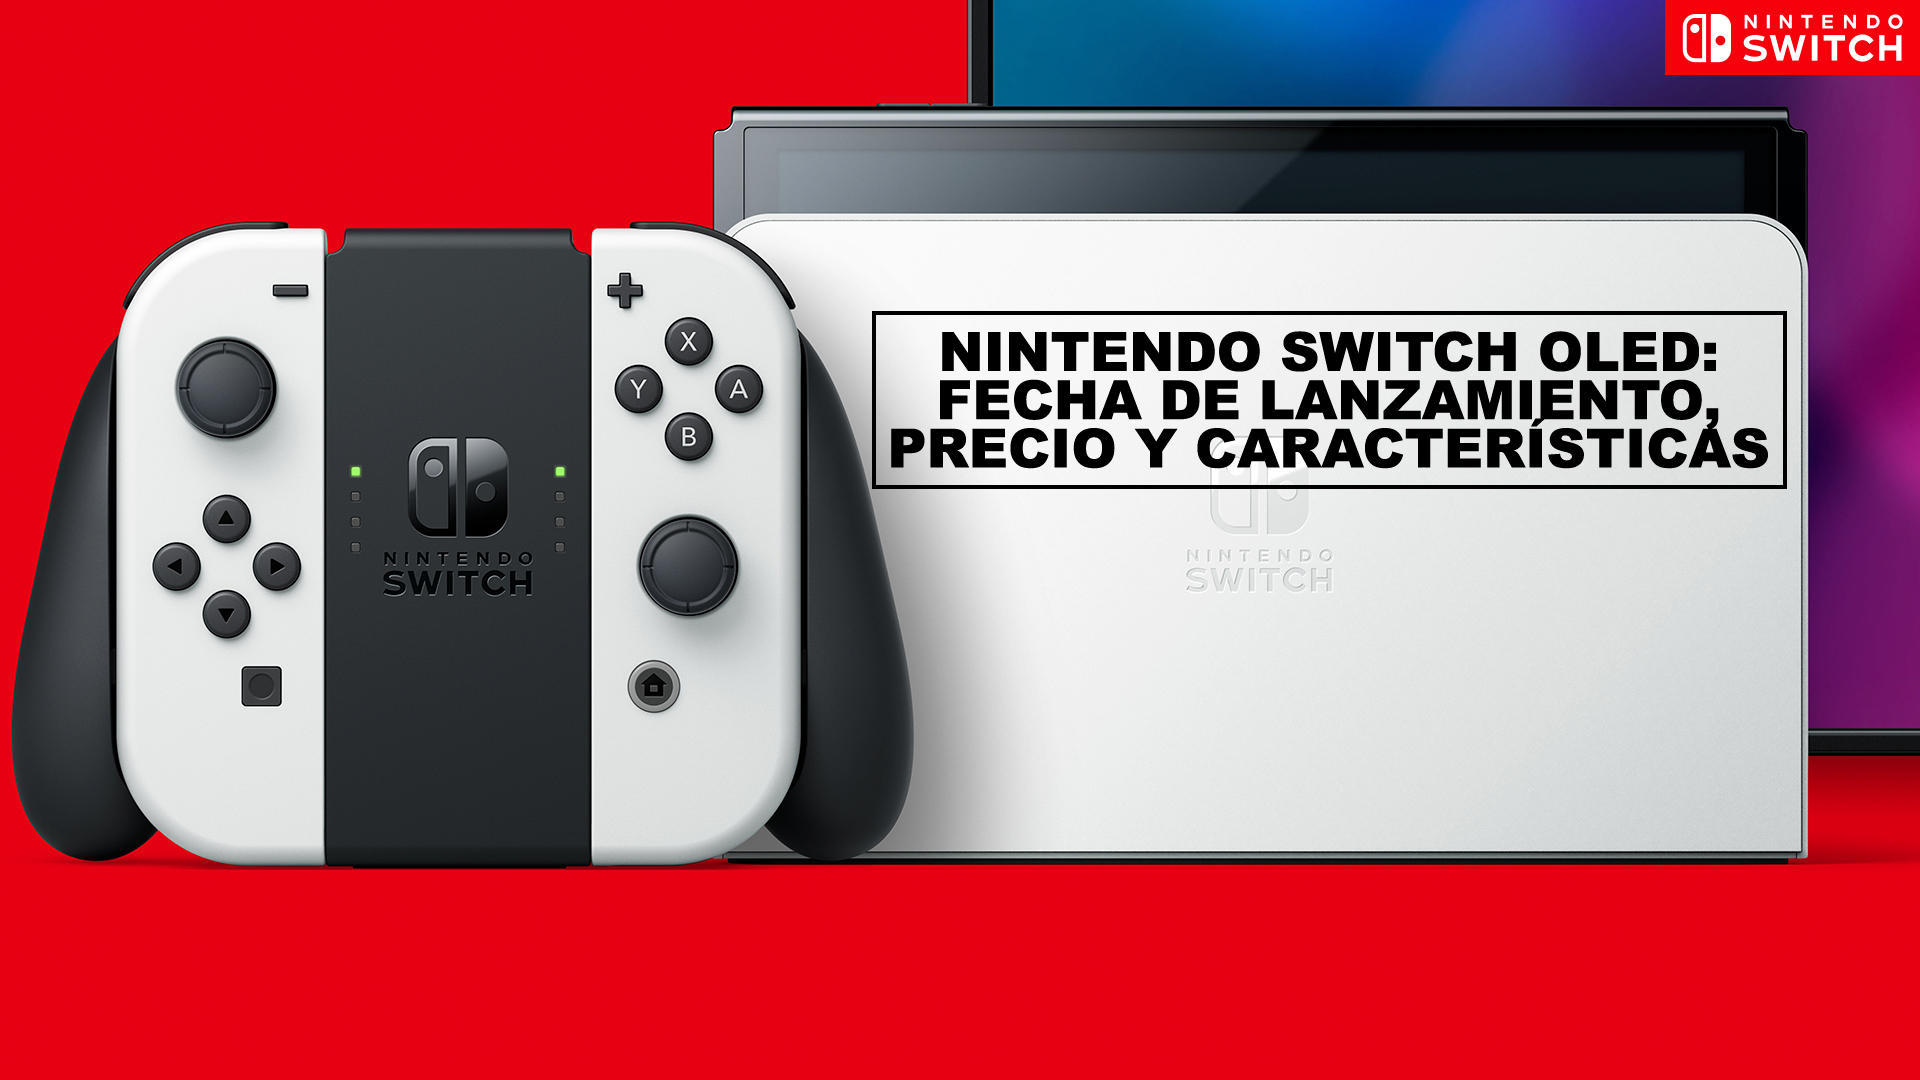 Nintendo Switch OLED: Fecha de lanzamiento, precio y caractersticas